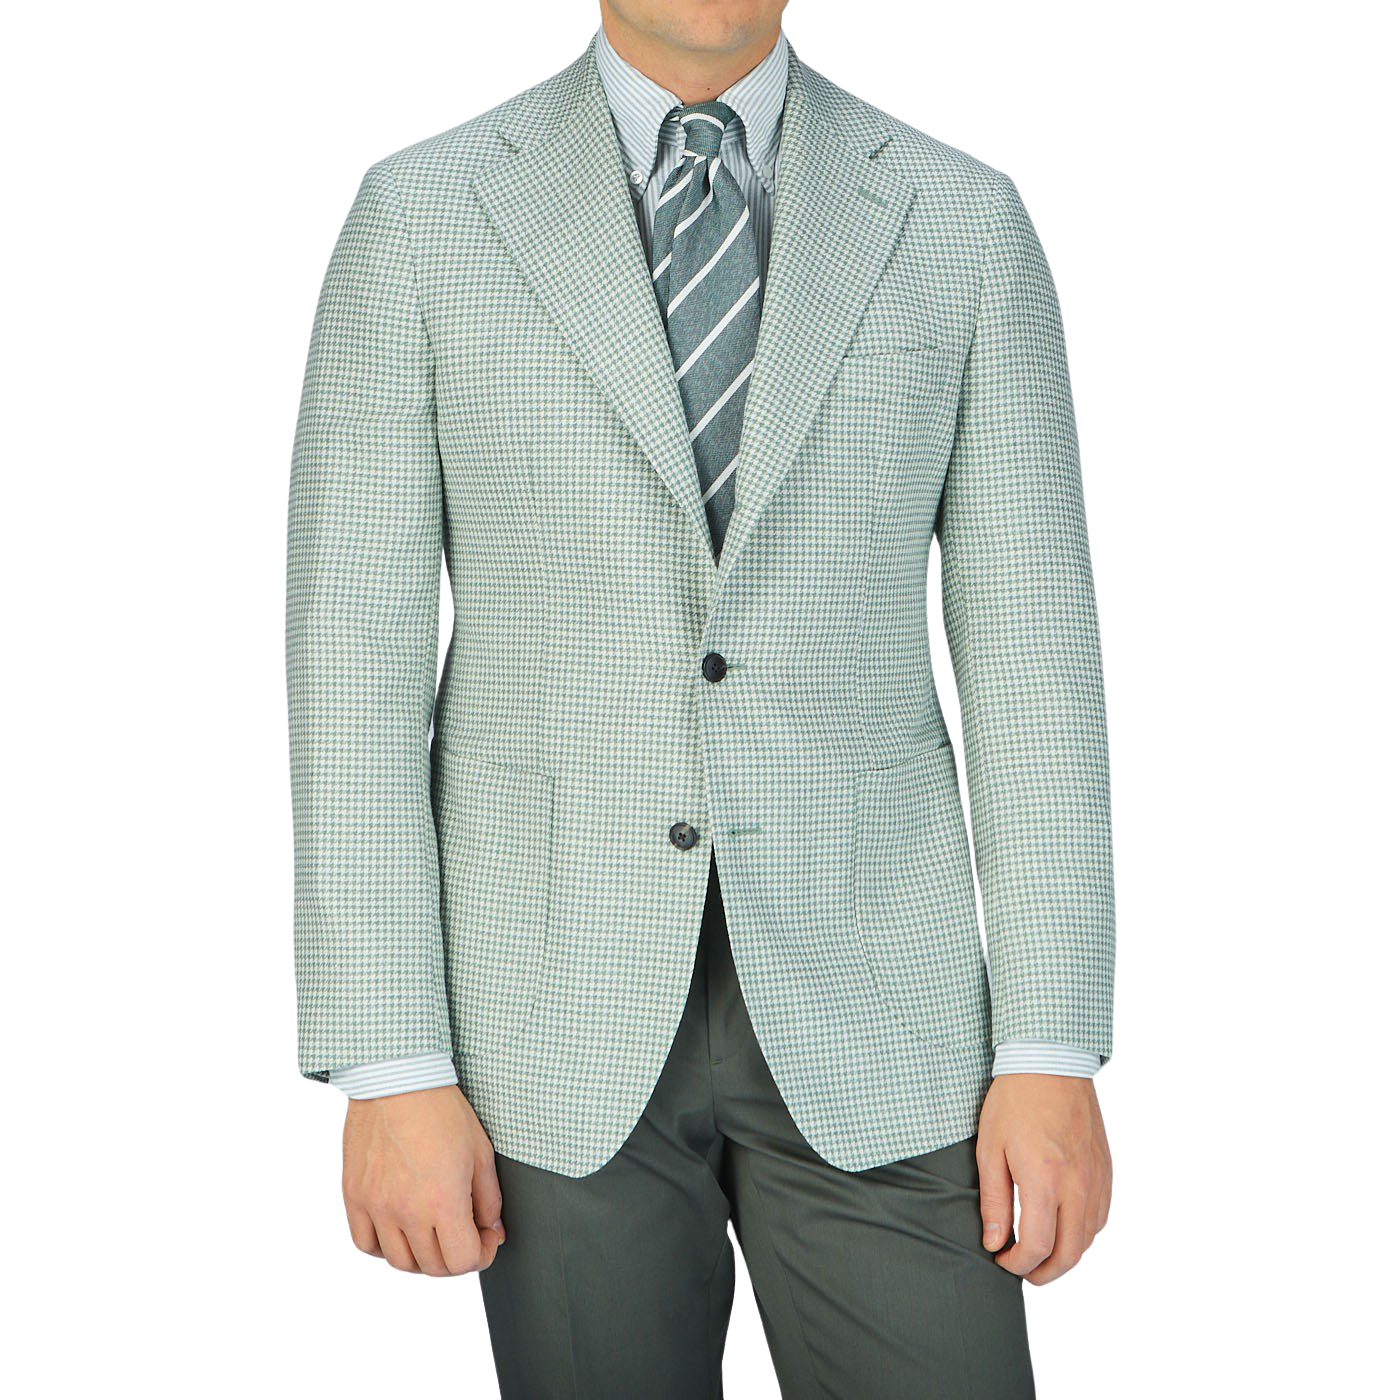 A man wearing a Baltzar Sartorial Green Houndstooth Wool Silk Linen Blazer made with a wool-silk-linen blend fabric.